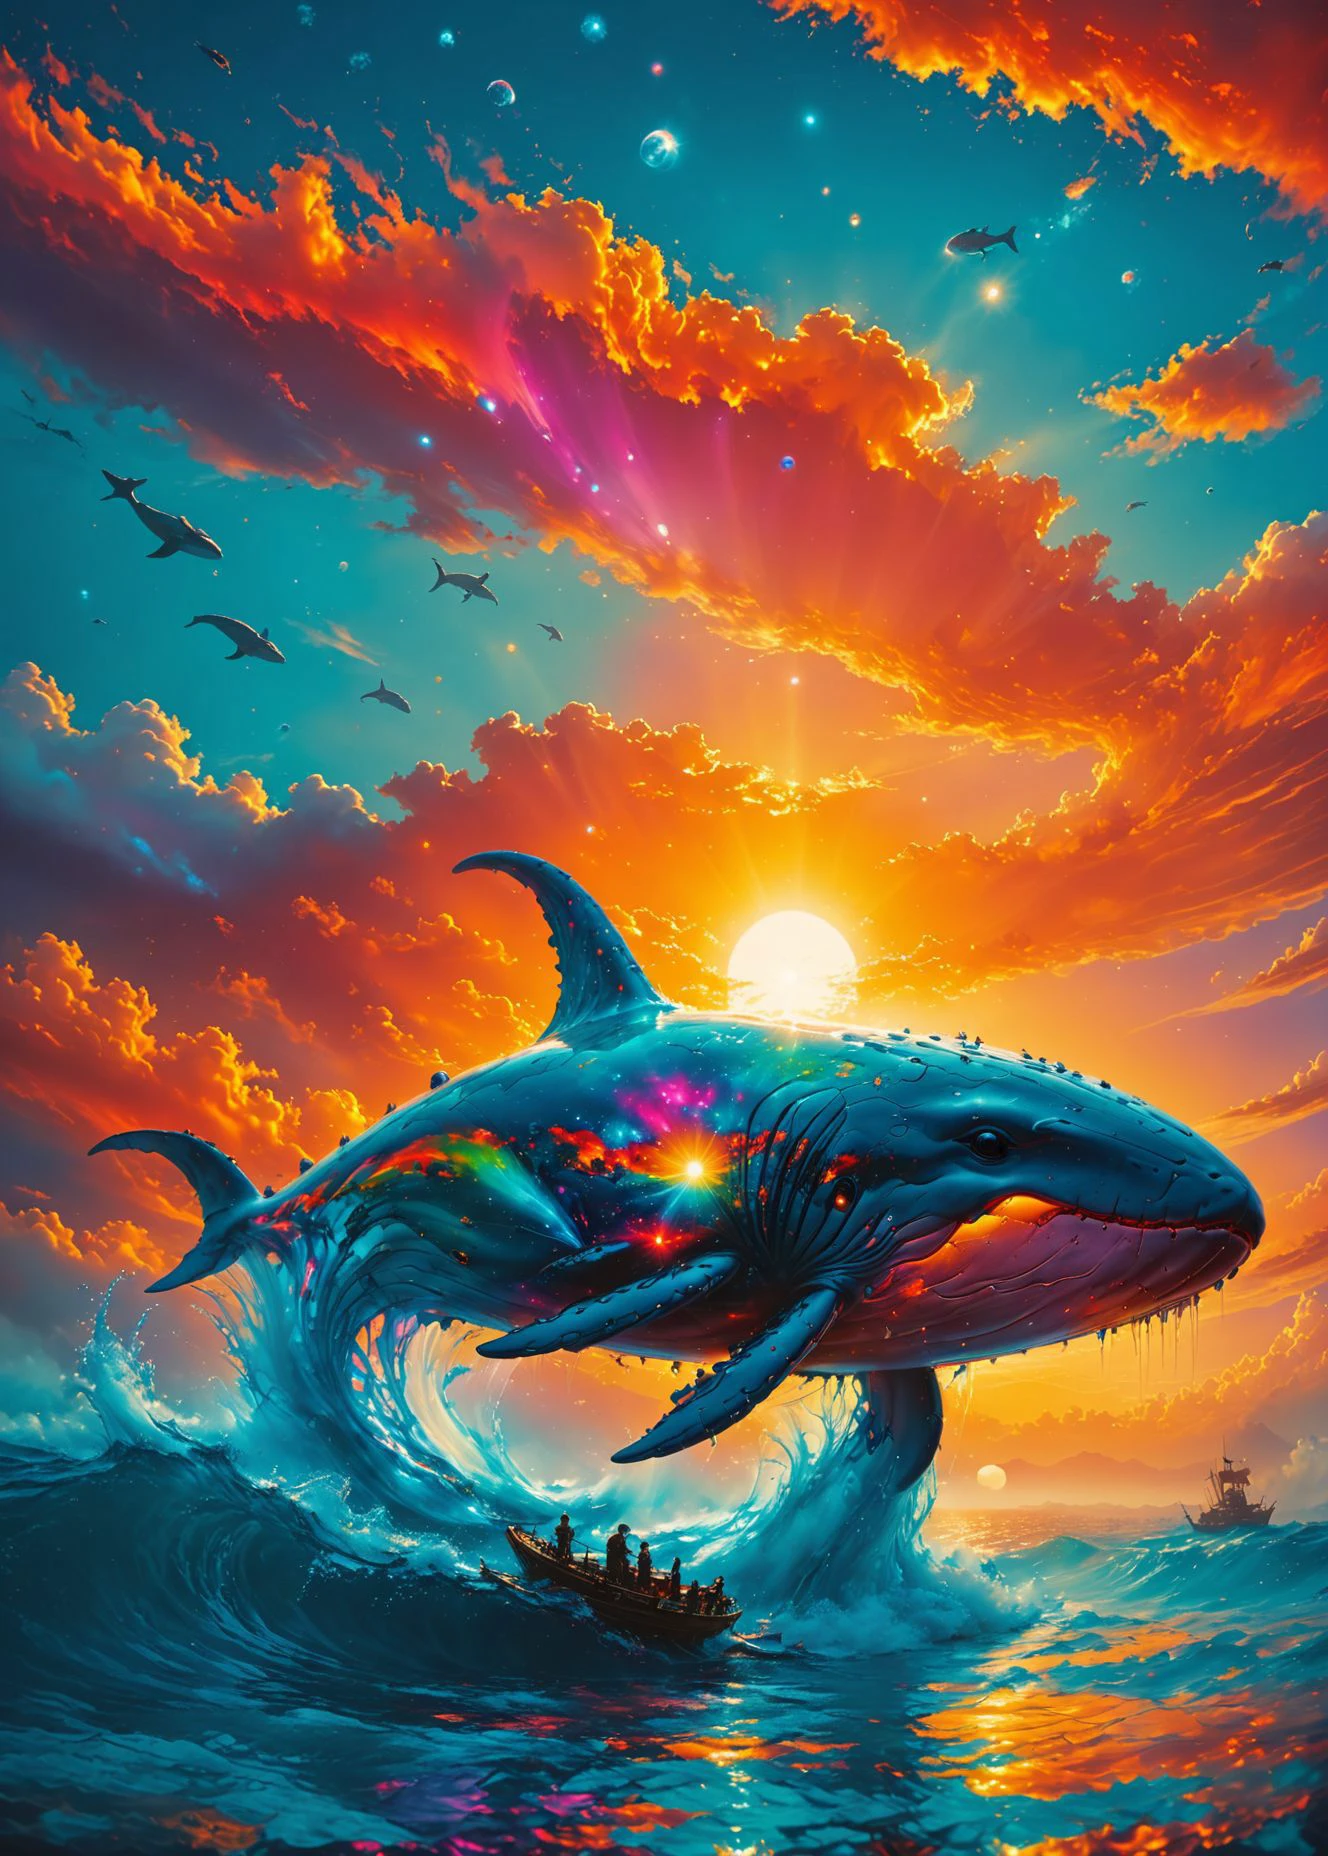 "حلم" (الروحاني:0.1), الحوت الطائر,  تجربة مذهلة, غروب الشمس على godworld,   الوان براقة, تحتوي على لقطة حركة ملونة, تحفة